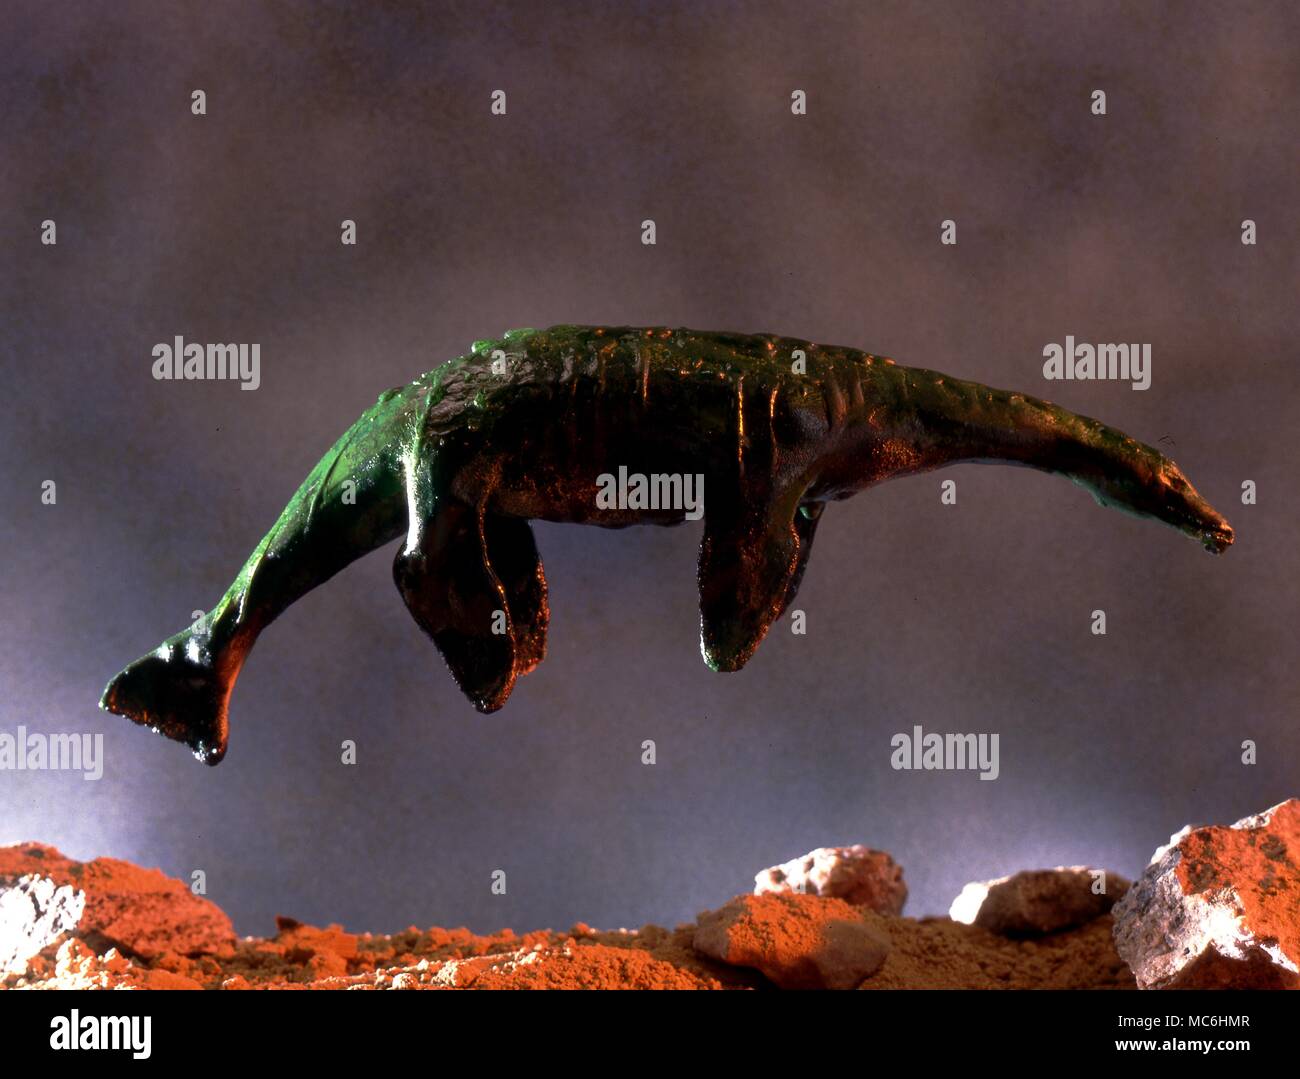 Mostri. Il mostro marino o mostro lacustre. Un modello in scala di un preistorico mostro acquatico, il Plesiosaurus che è stato rivendicato come l'originale Mostro di Loch Ness. Foto Stock